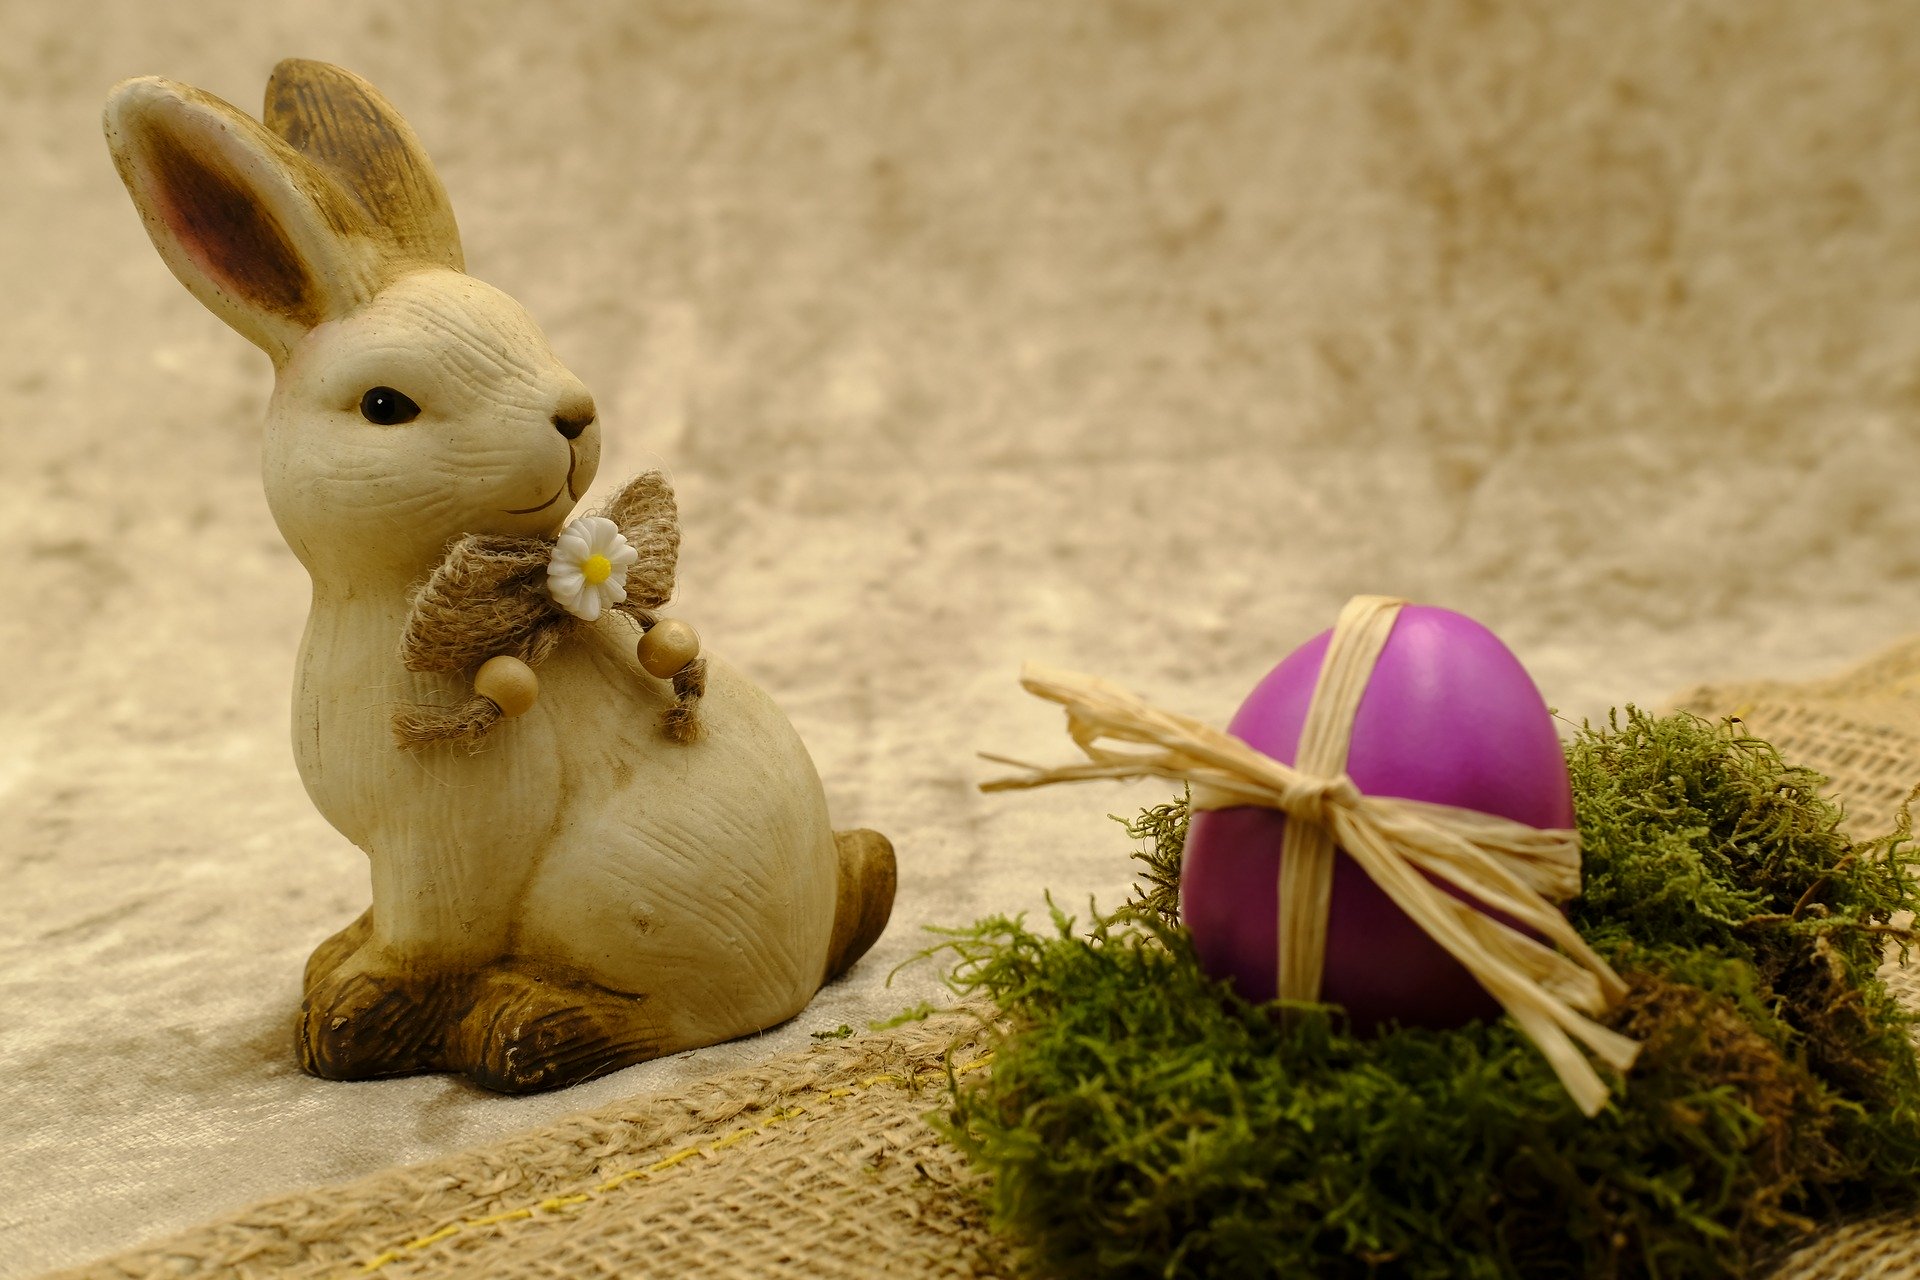 Пасхальный кролик почему символ пасхи